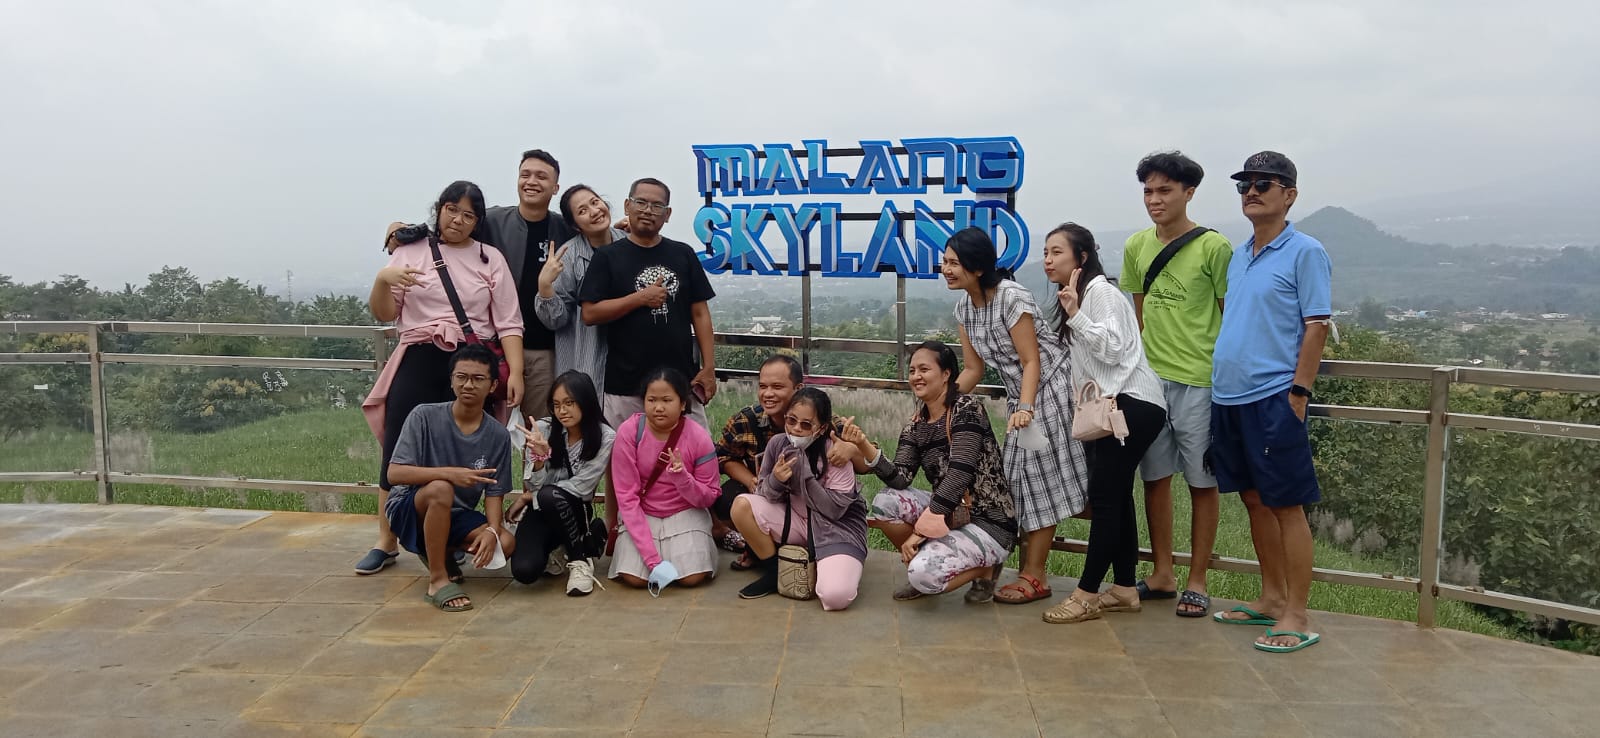 Buka 21 April, Malang Skyland Siap Jadi Tempat Wisata Modern